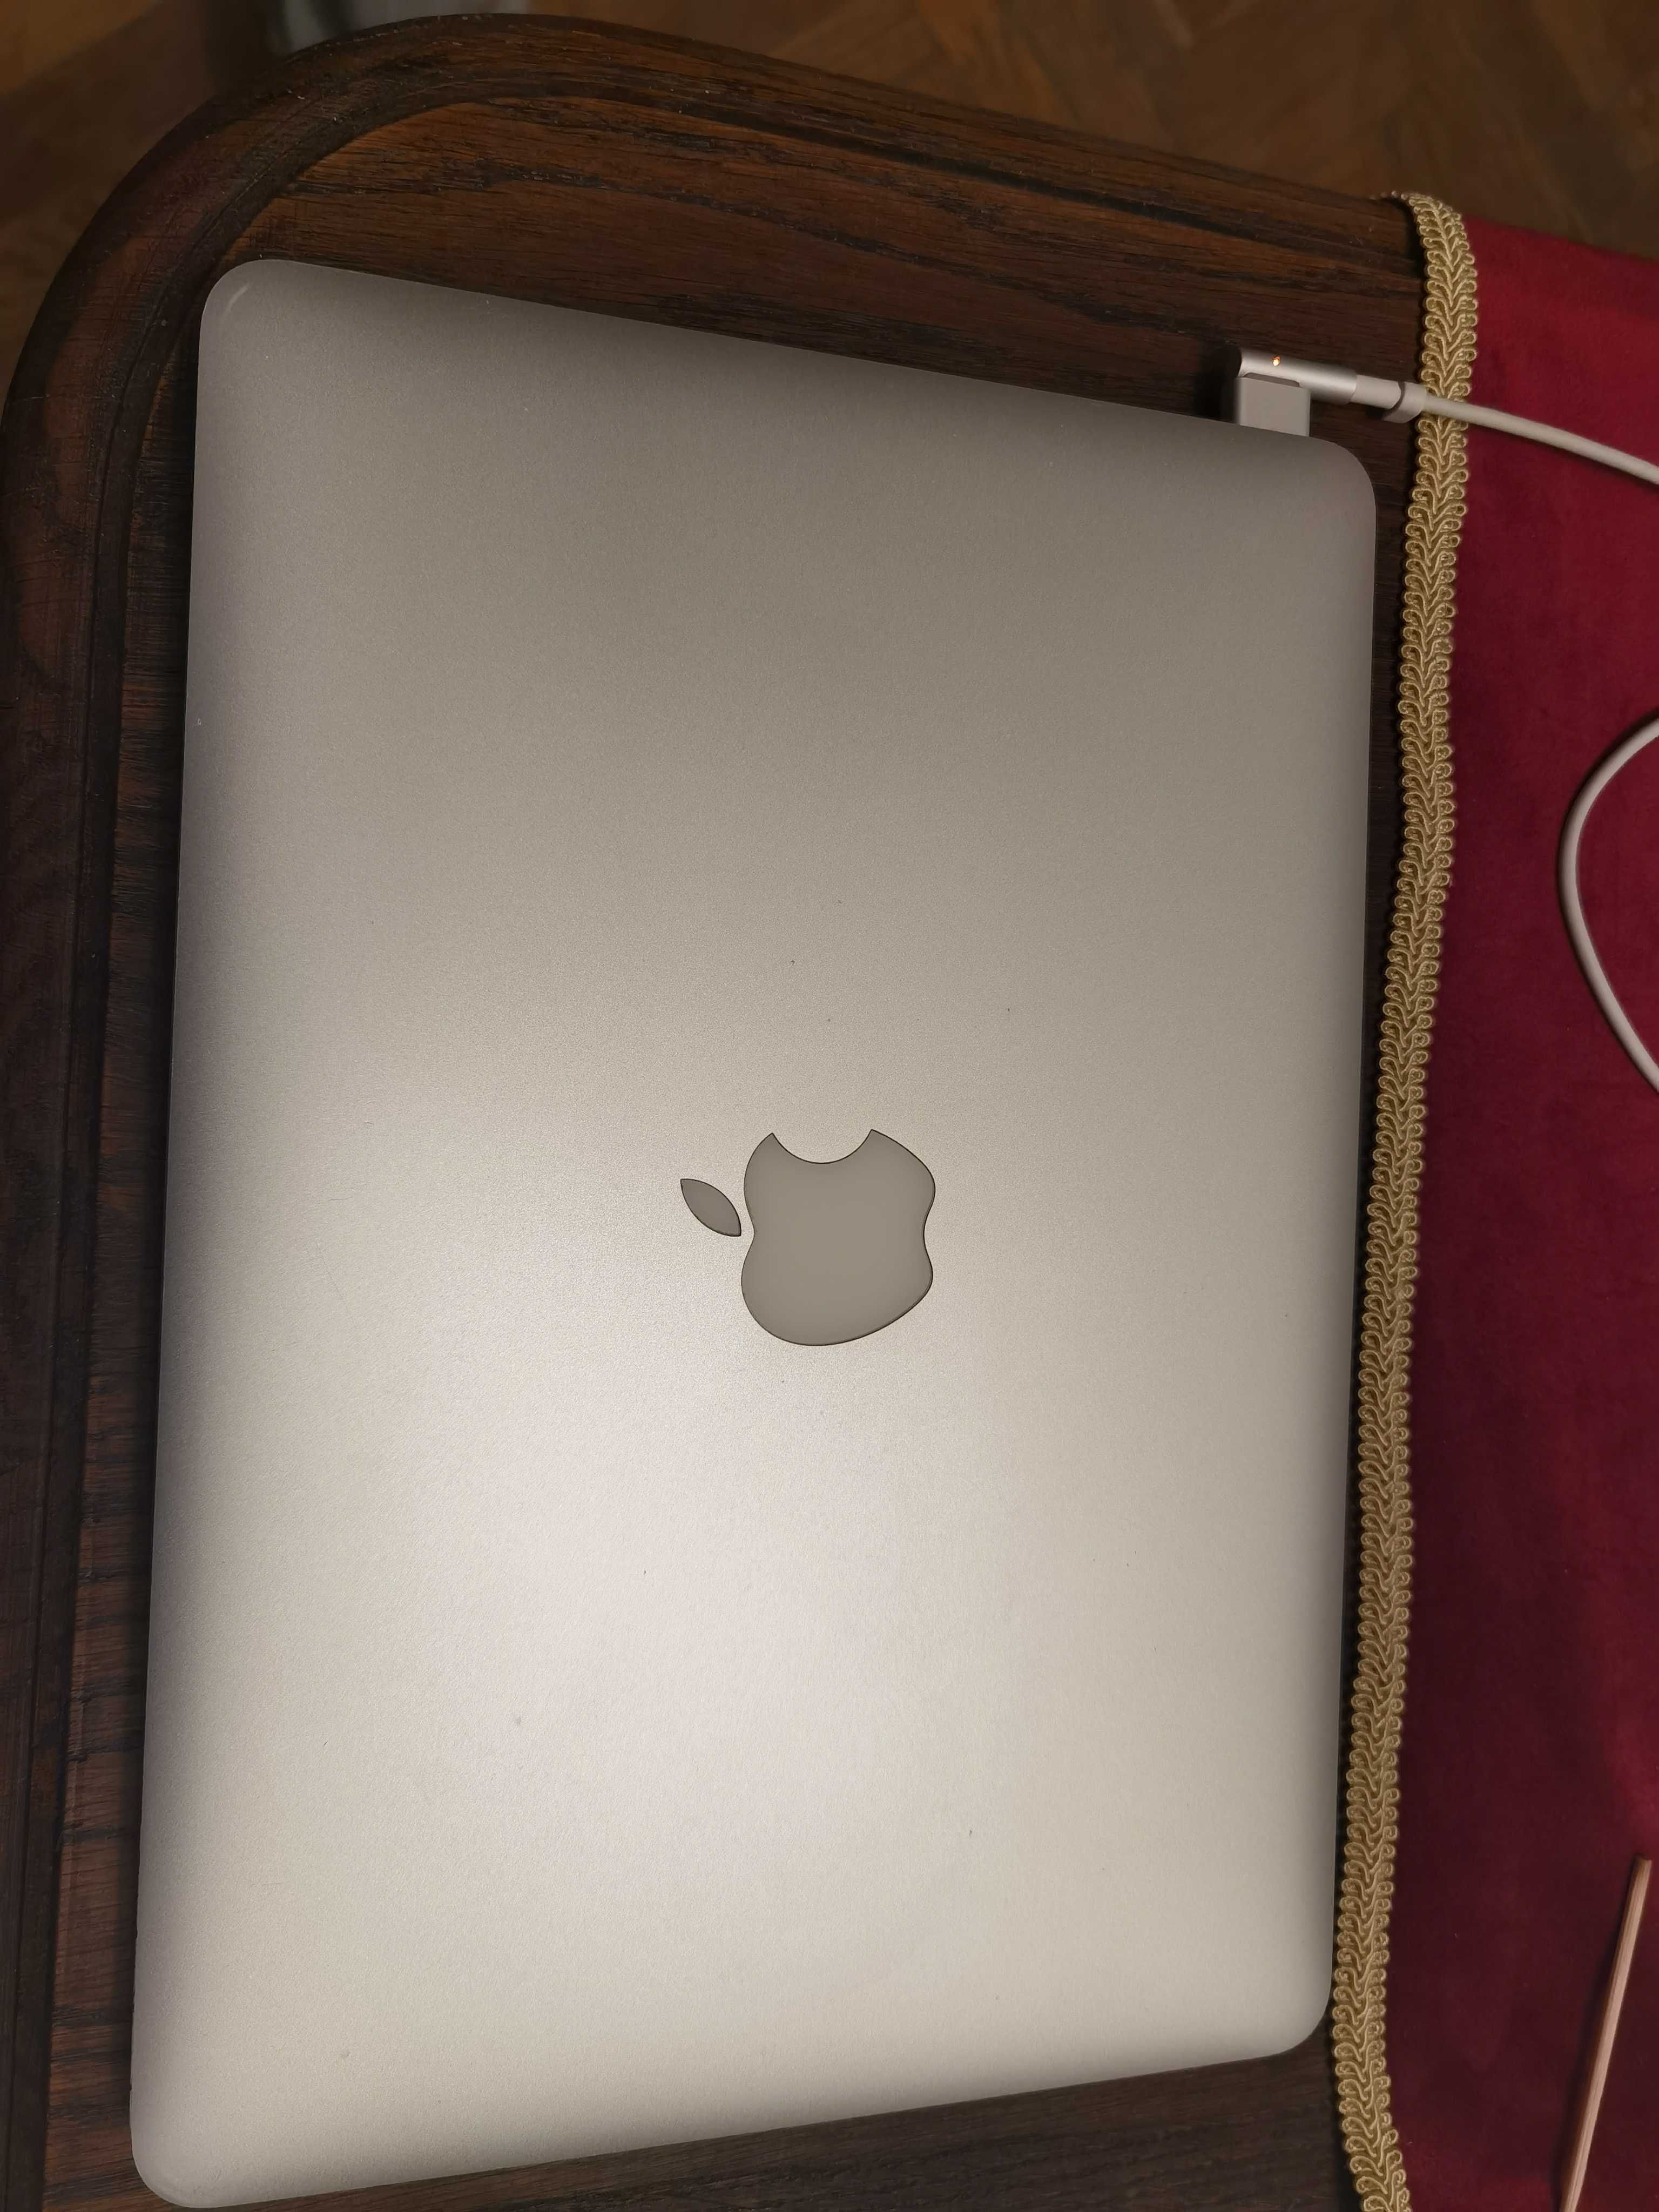 Macbook Pro model A1425